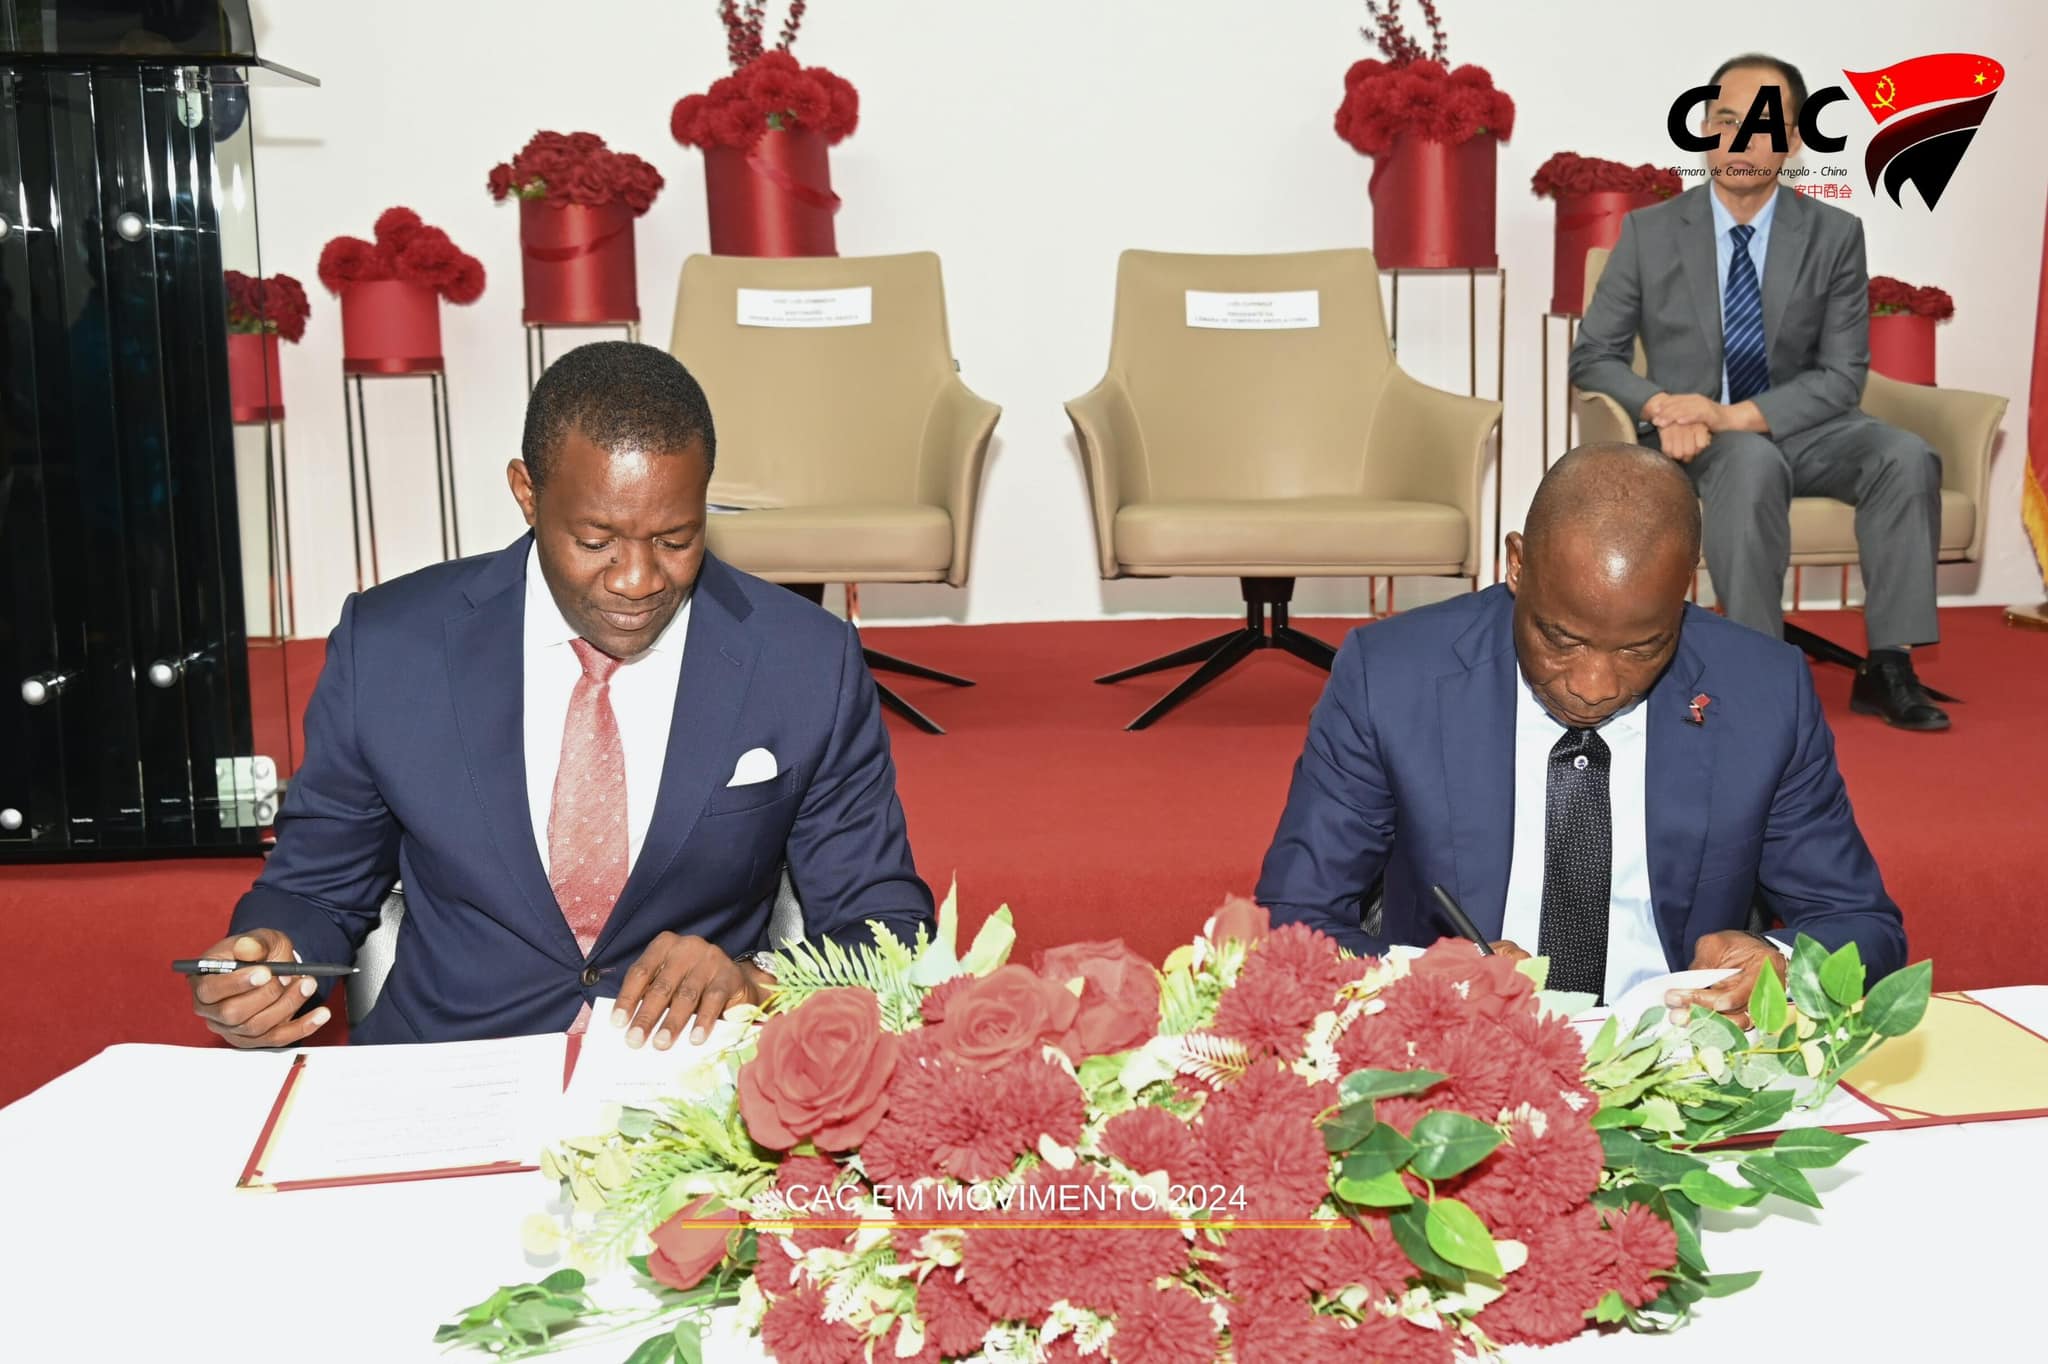 Câmara de comércio Angola-China e ordem dos advogados de angola assinam acordo de parceria estratégica para formação de advogados na língua mandarim